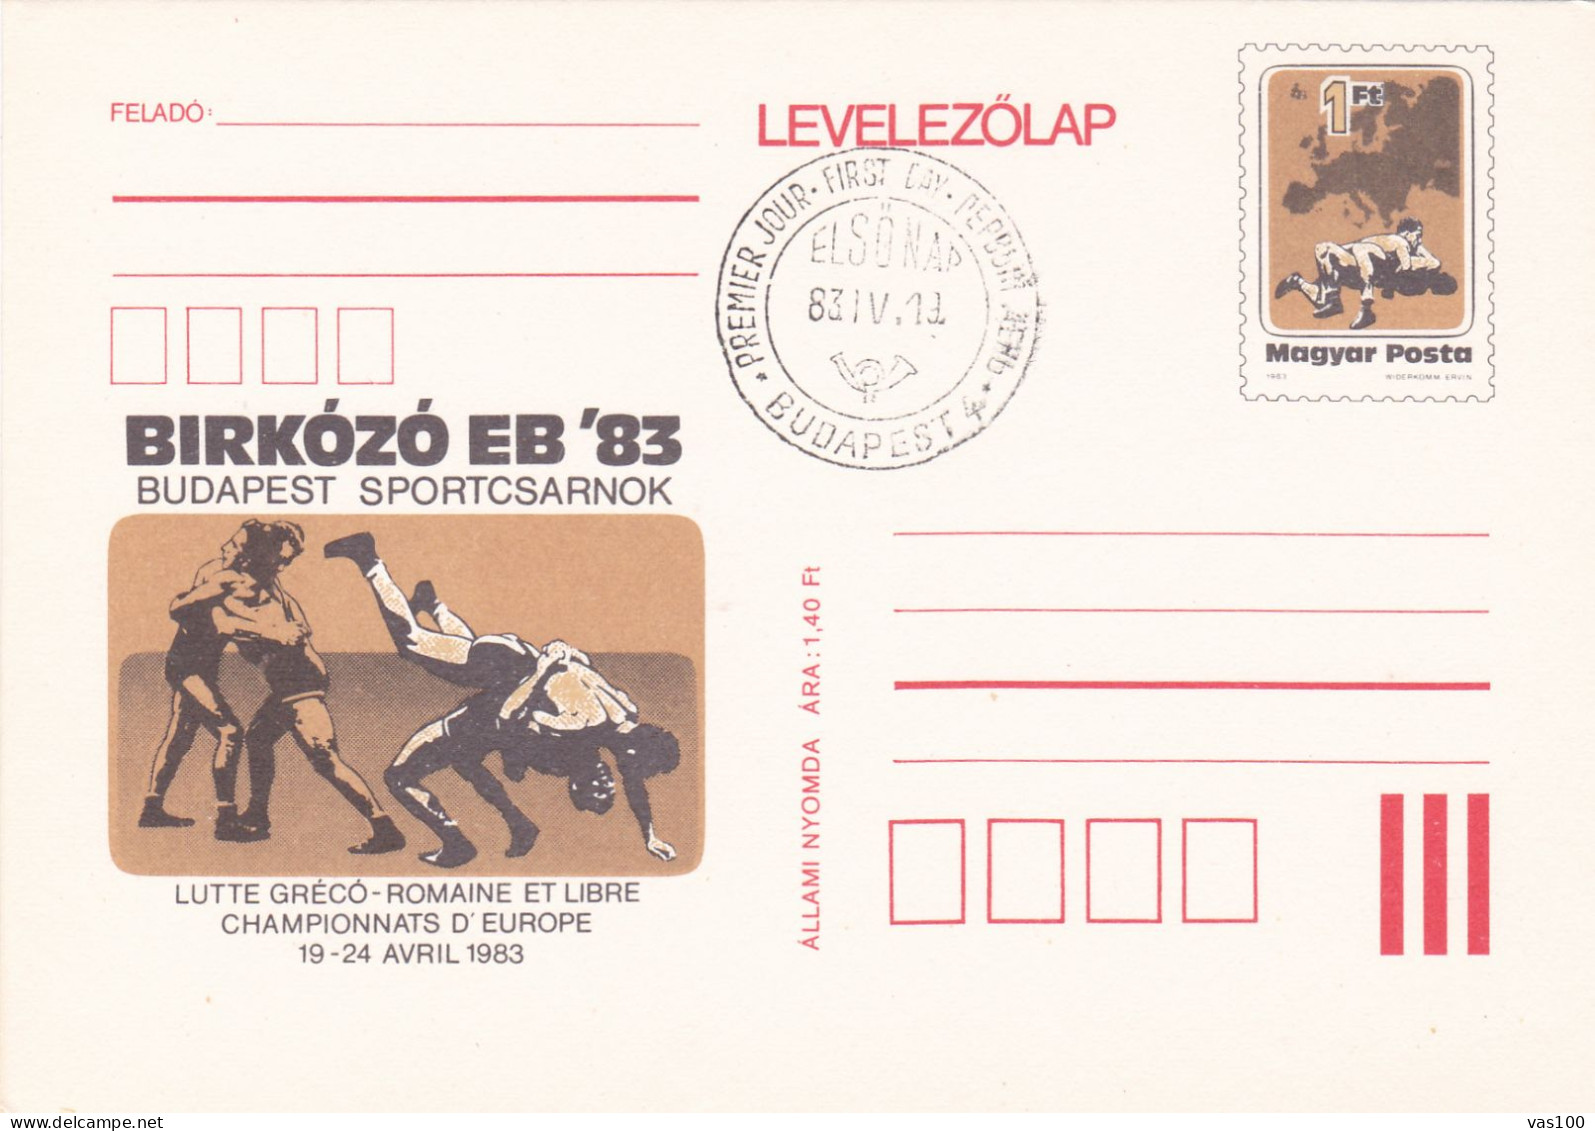 LUTTE GRECO-ROMAINE ET LIBERE, POST CARD STATIONERY, OBLITERATION  FDC 1983, ROMANIA - Lotta